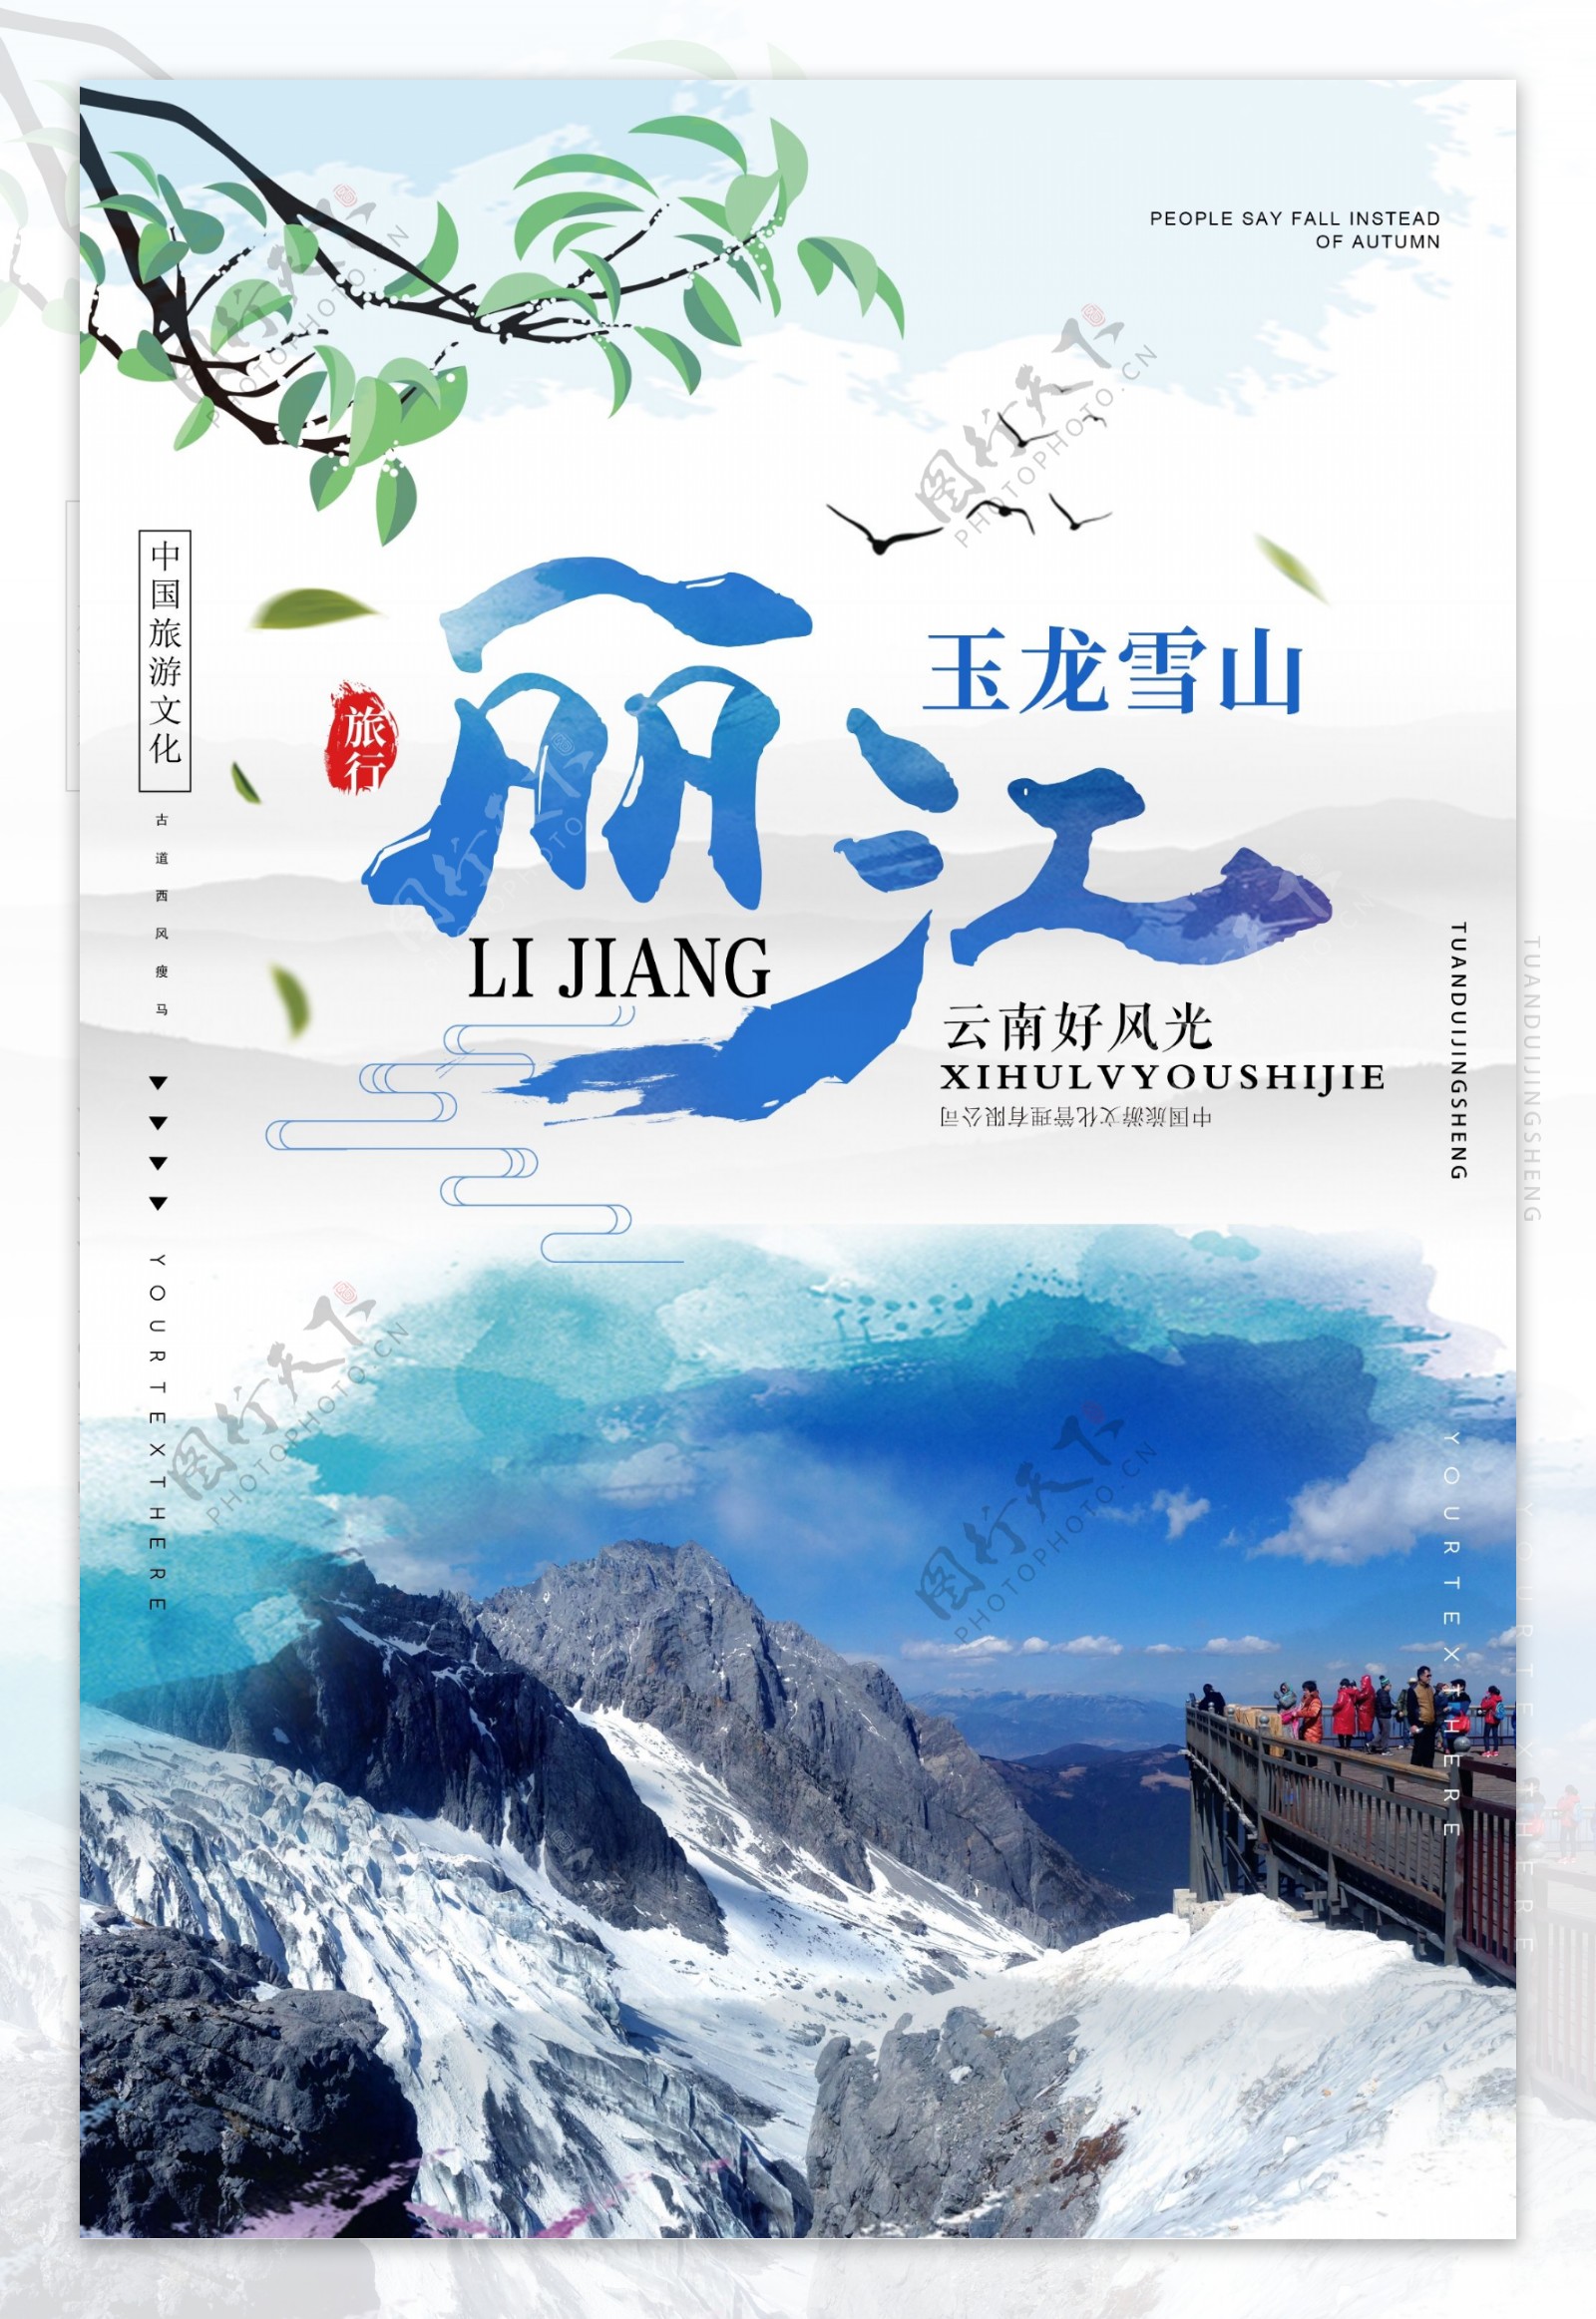 丽江旅游景点促销宣传海报